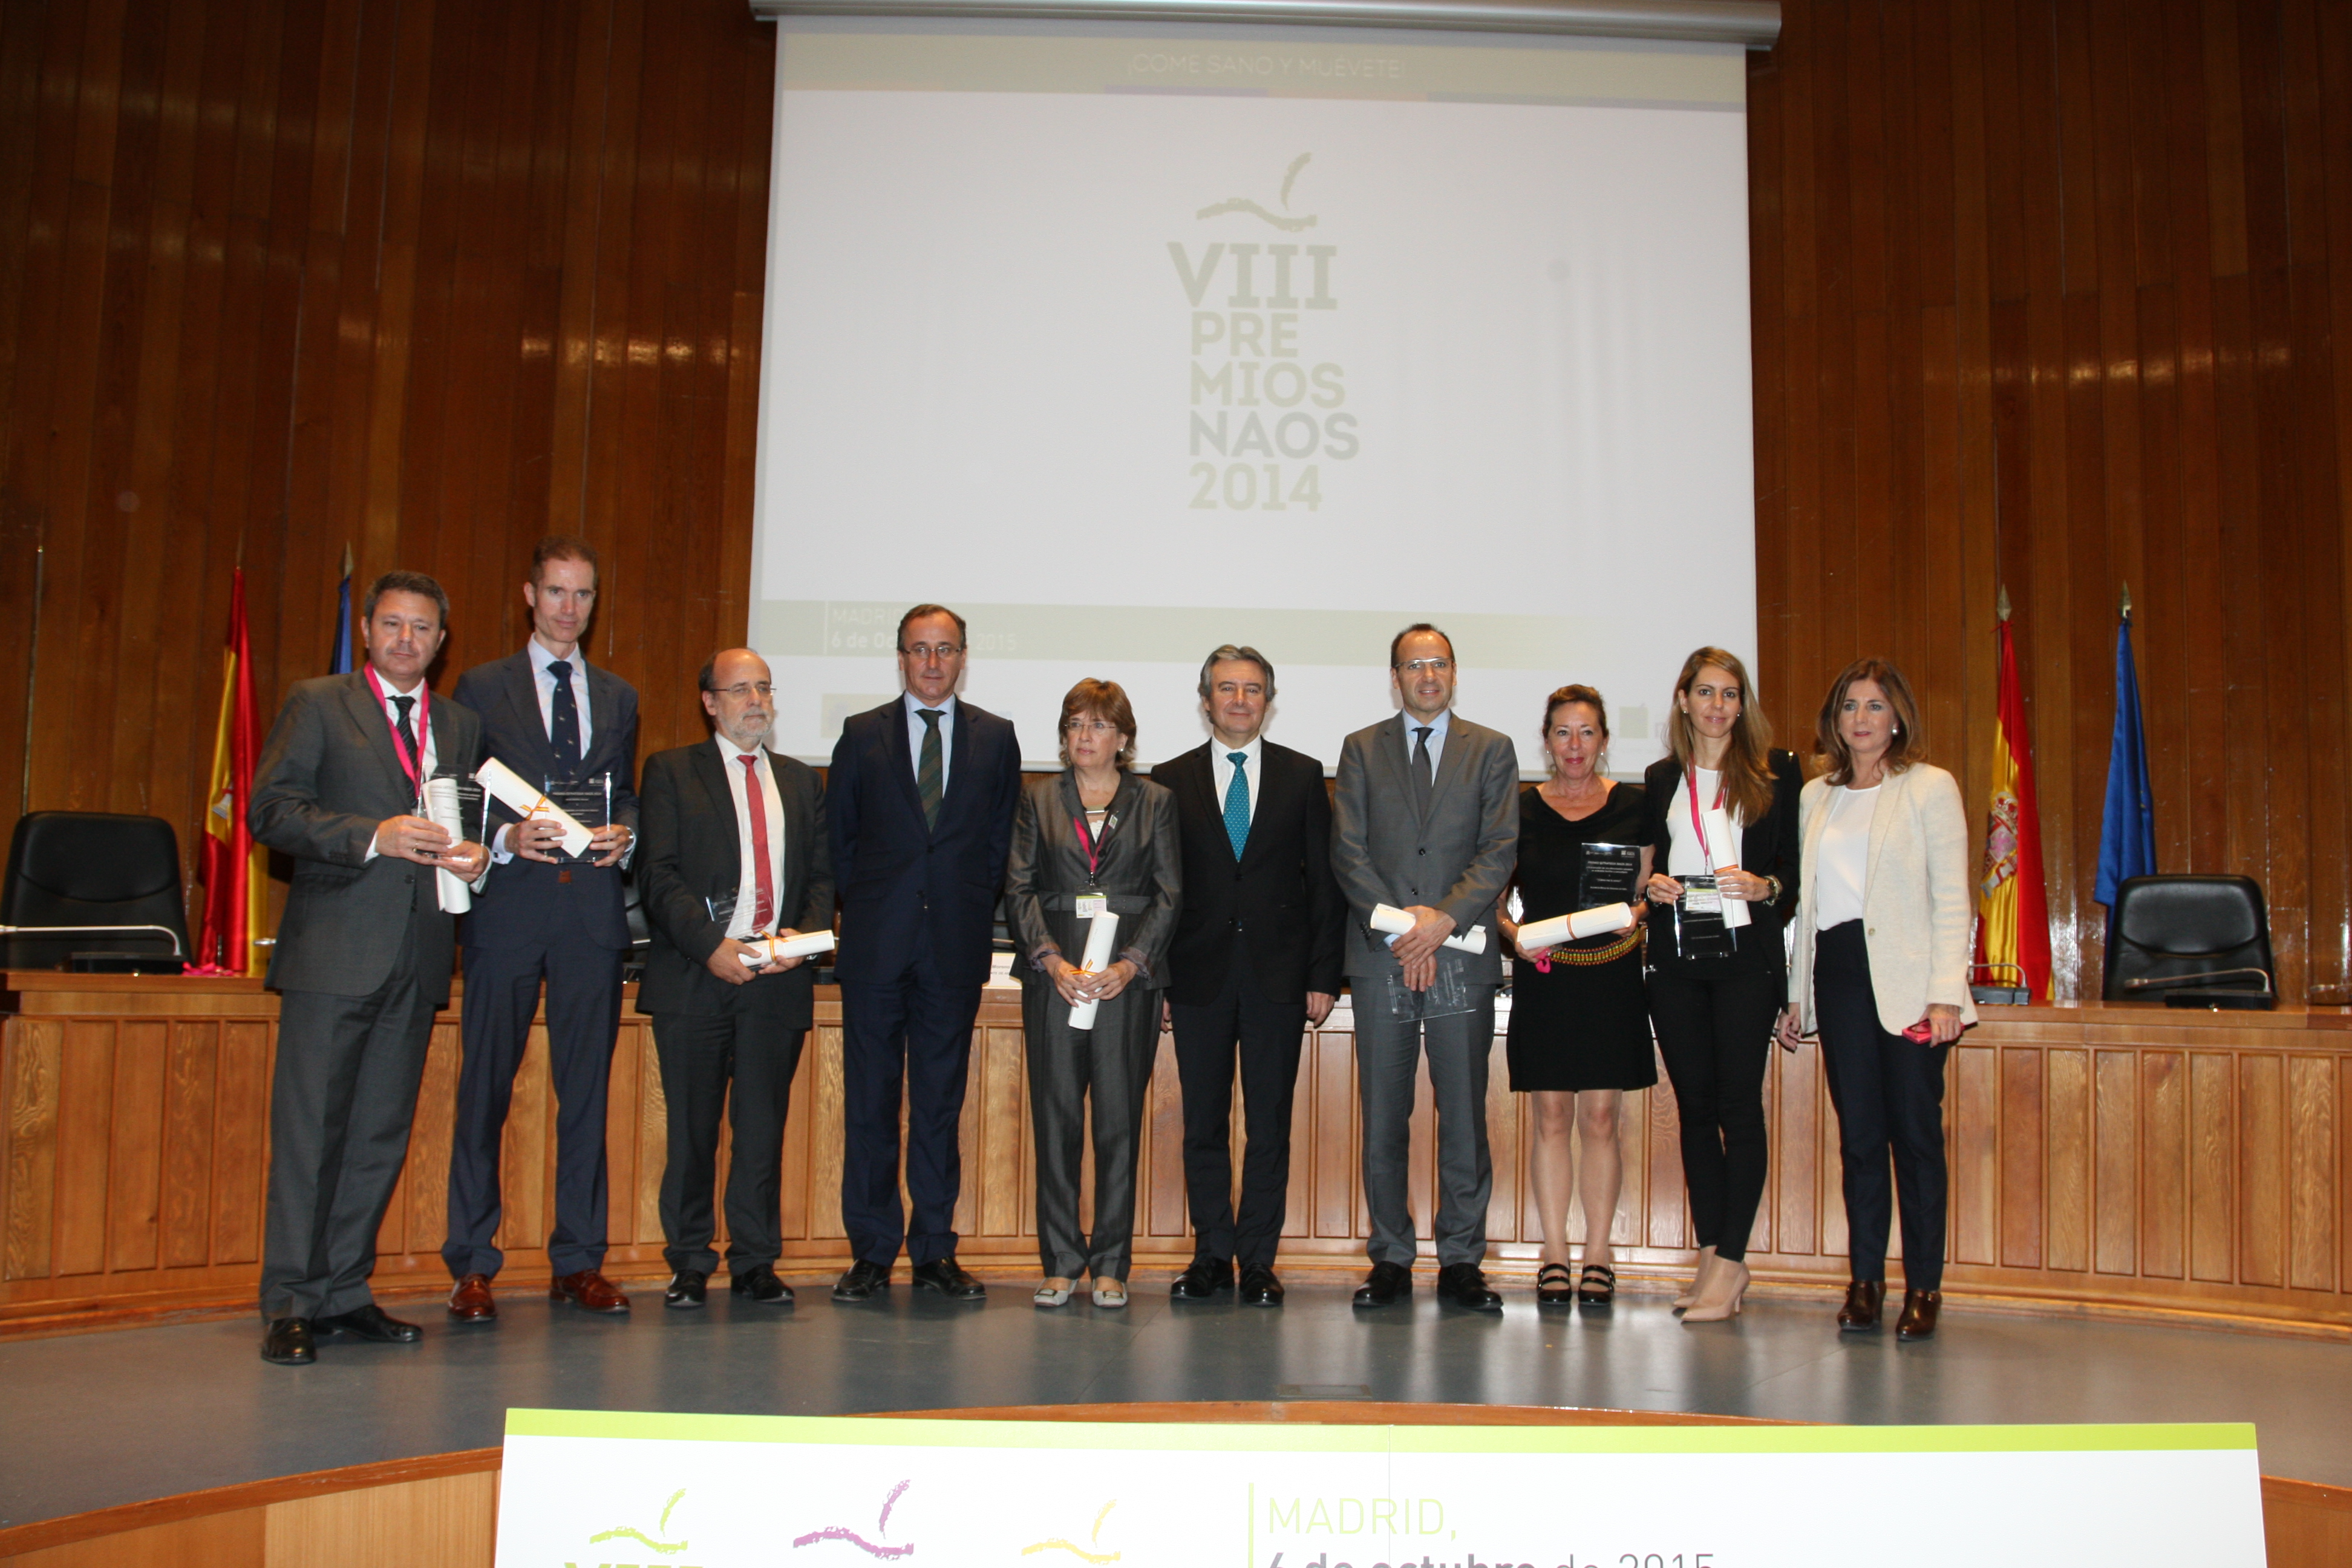 VIII Premios Estrategia NAOS, edición 2014